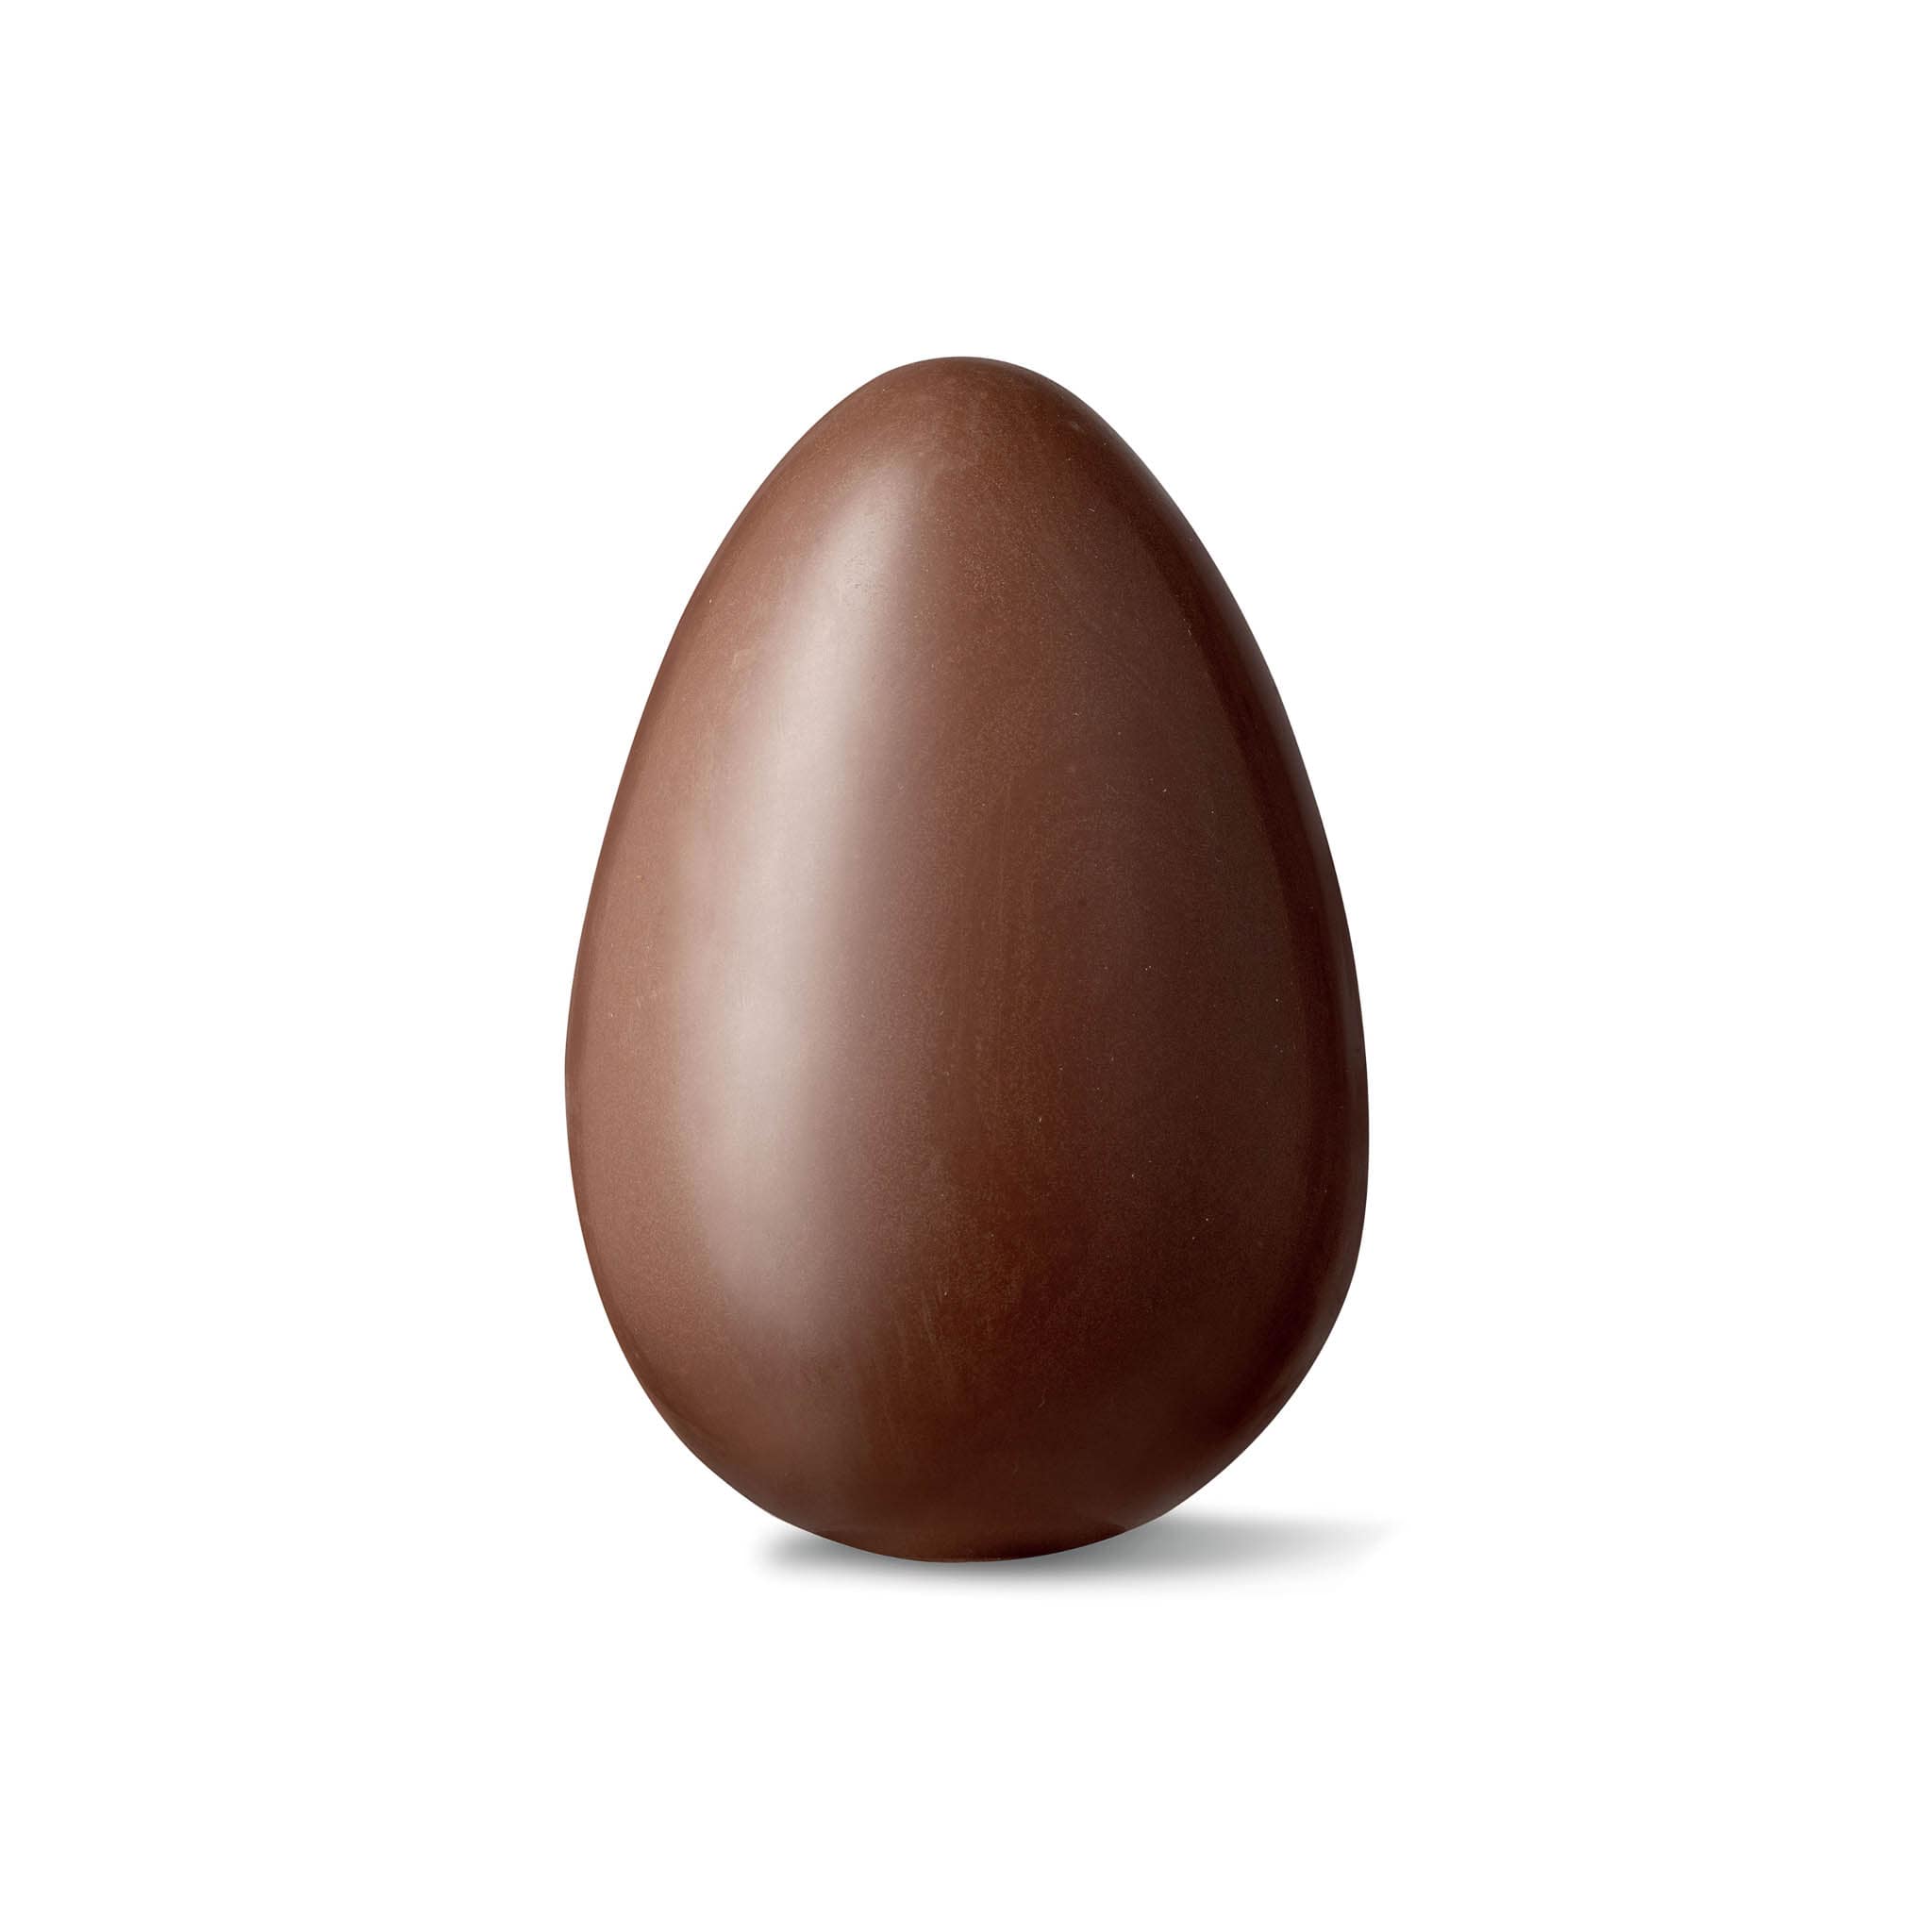 La Perla di Torino Triple Truffle Filled Easter Egg, 100g